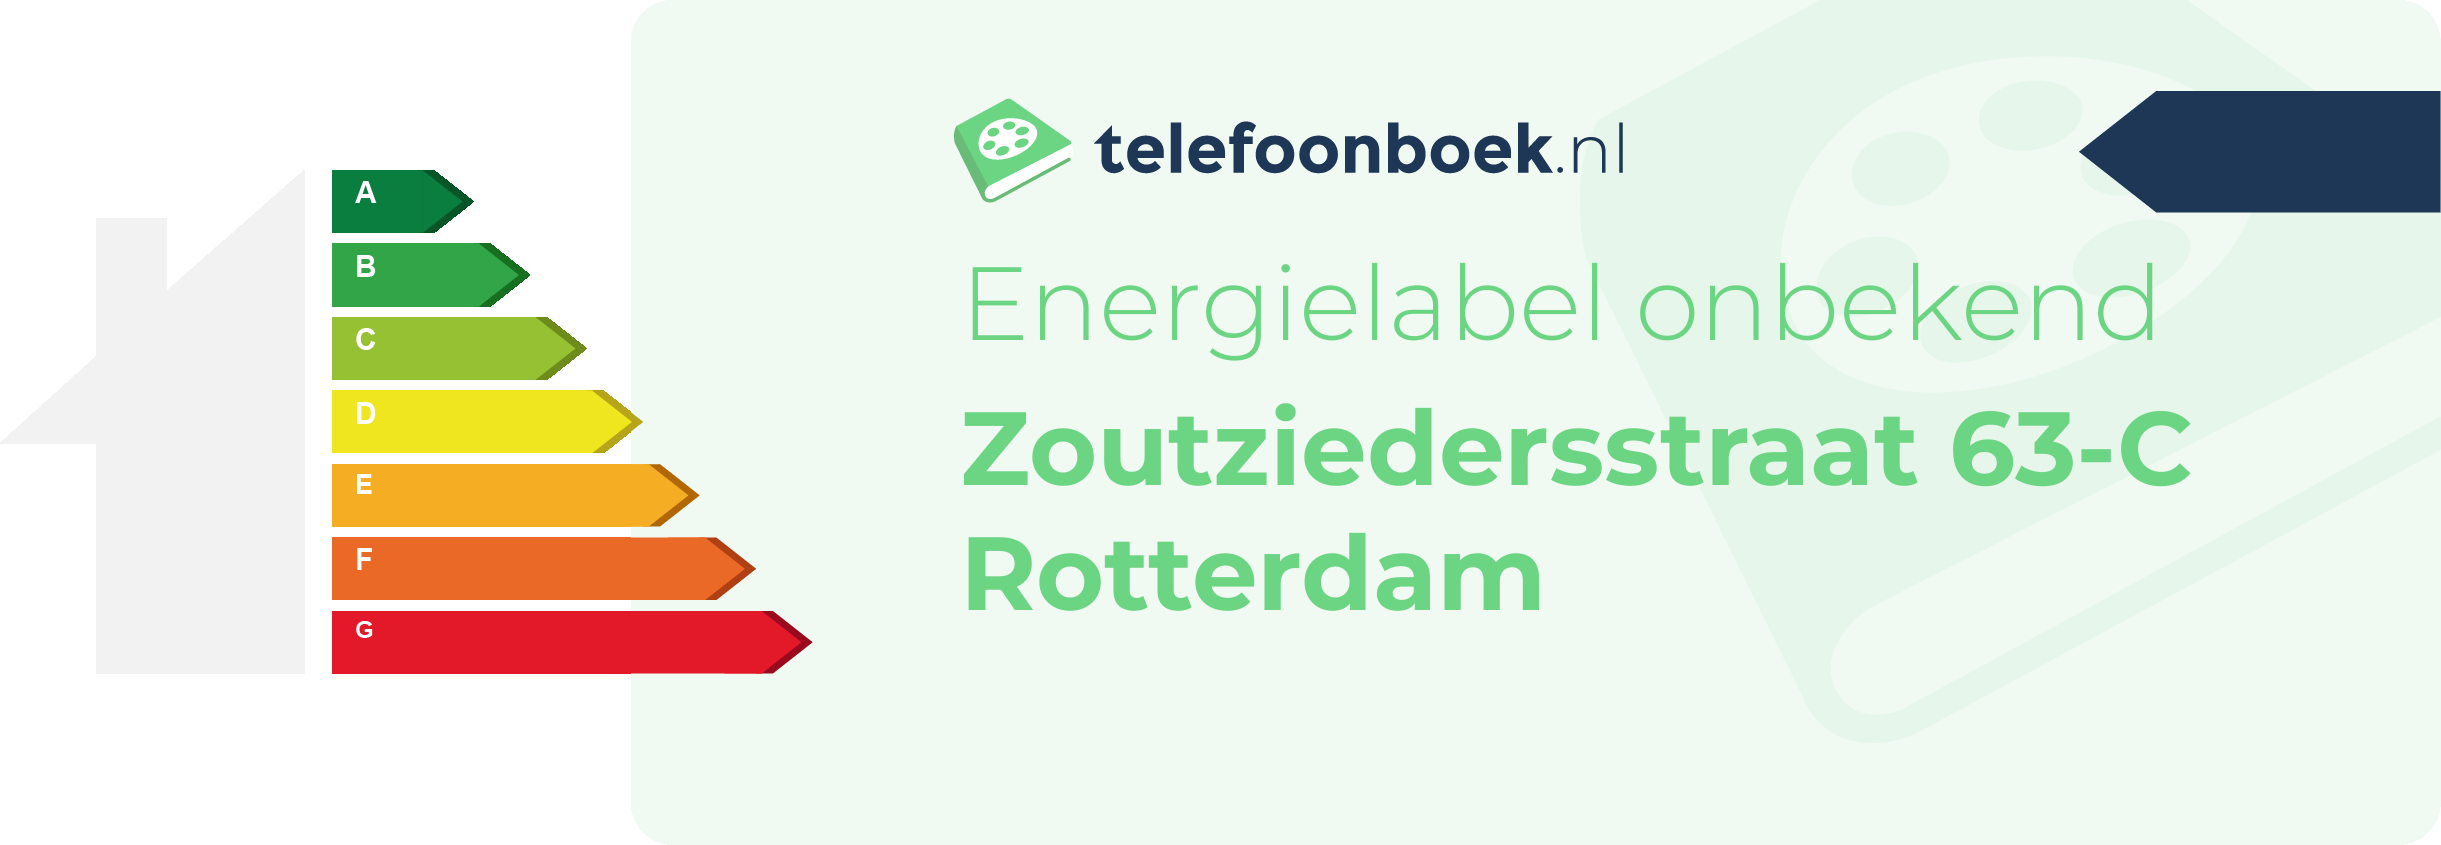 Energielabel Zoutziedersstraat 63-C Rotterdam